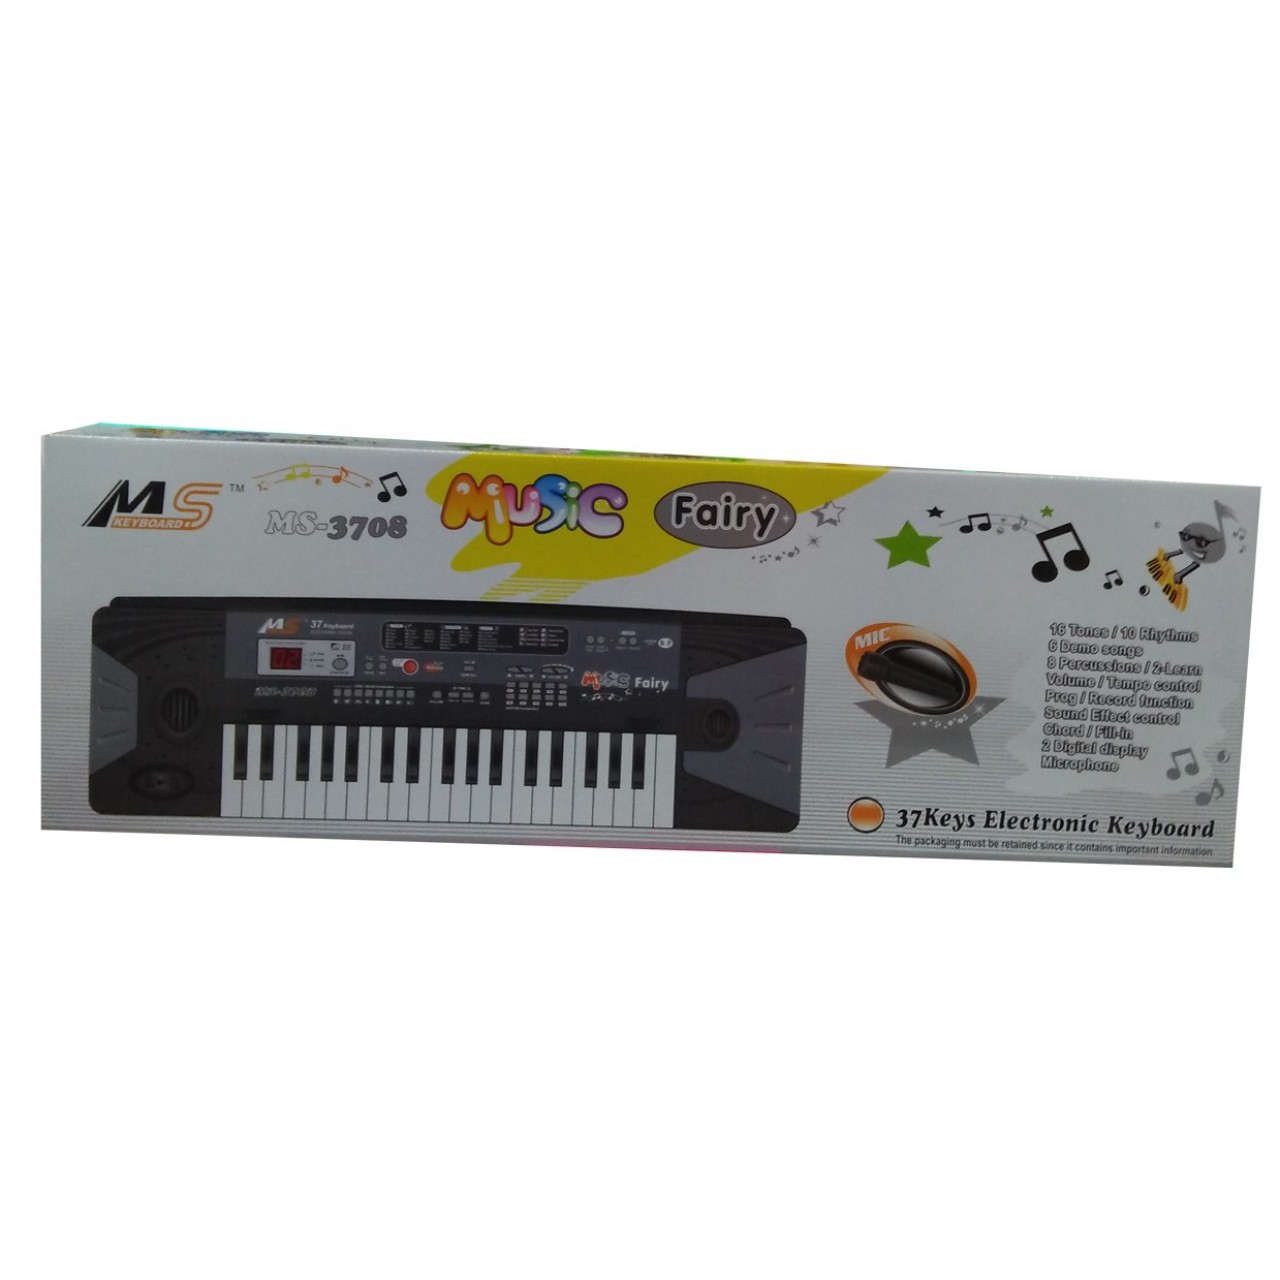 Music Fairy Electronic Keyboard MS-3708 - 37 Keys